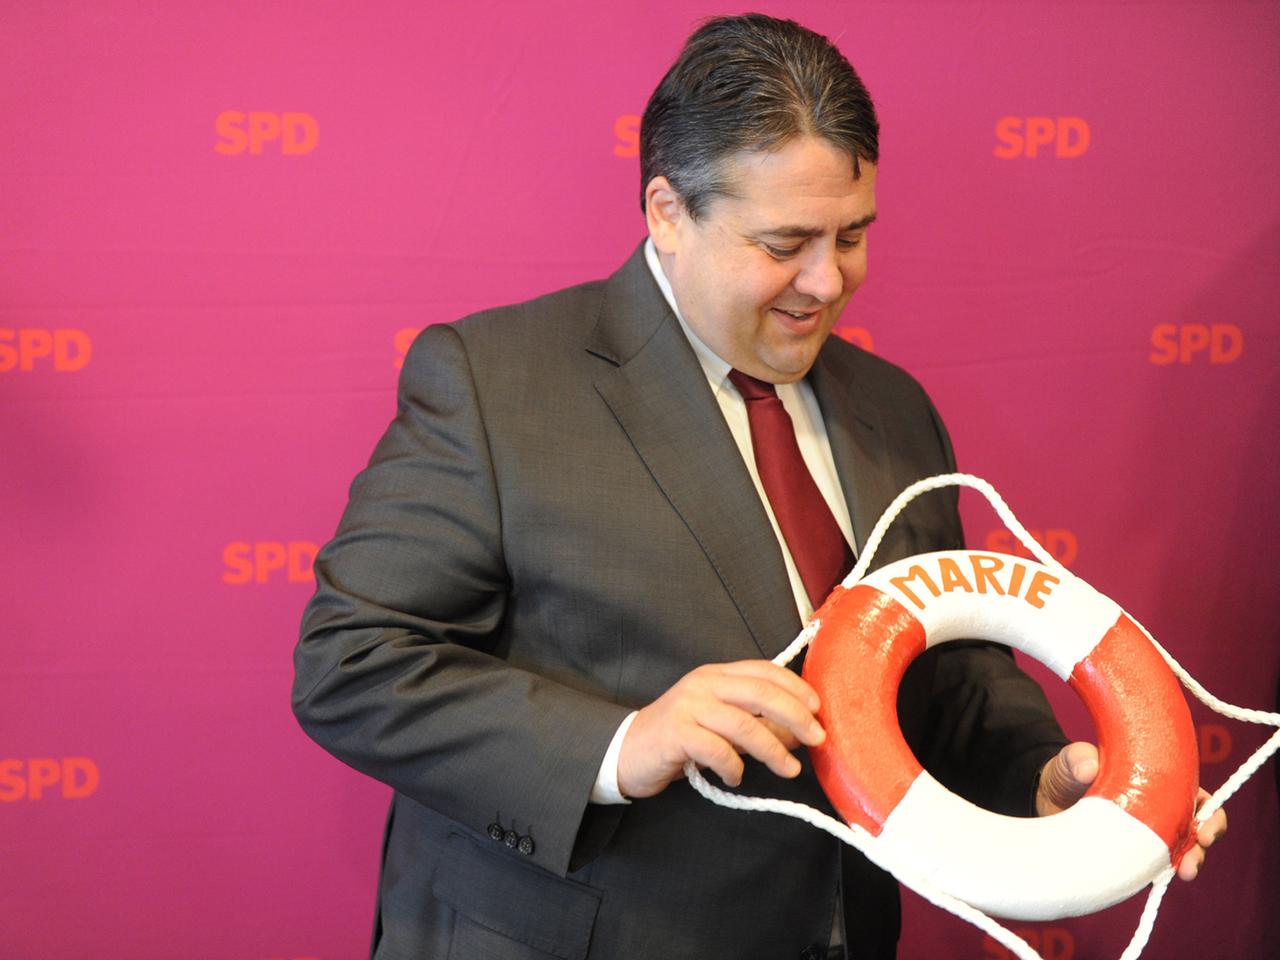 Der SPD-Parteivorsitzende Sigmar Gabriel hält am Montag (23.04.2012) in Kiel zu Beginn der SPD-Bundesvorstandssitzung ein Geschenk, einen Rettungsring mit dem Namen seiner neugeborenen Tochter Marie, hoch.